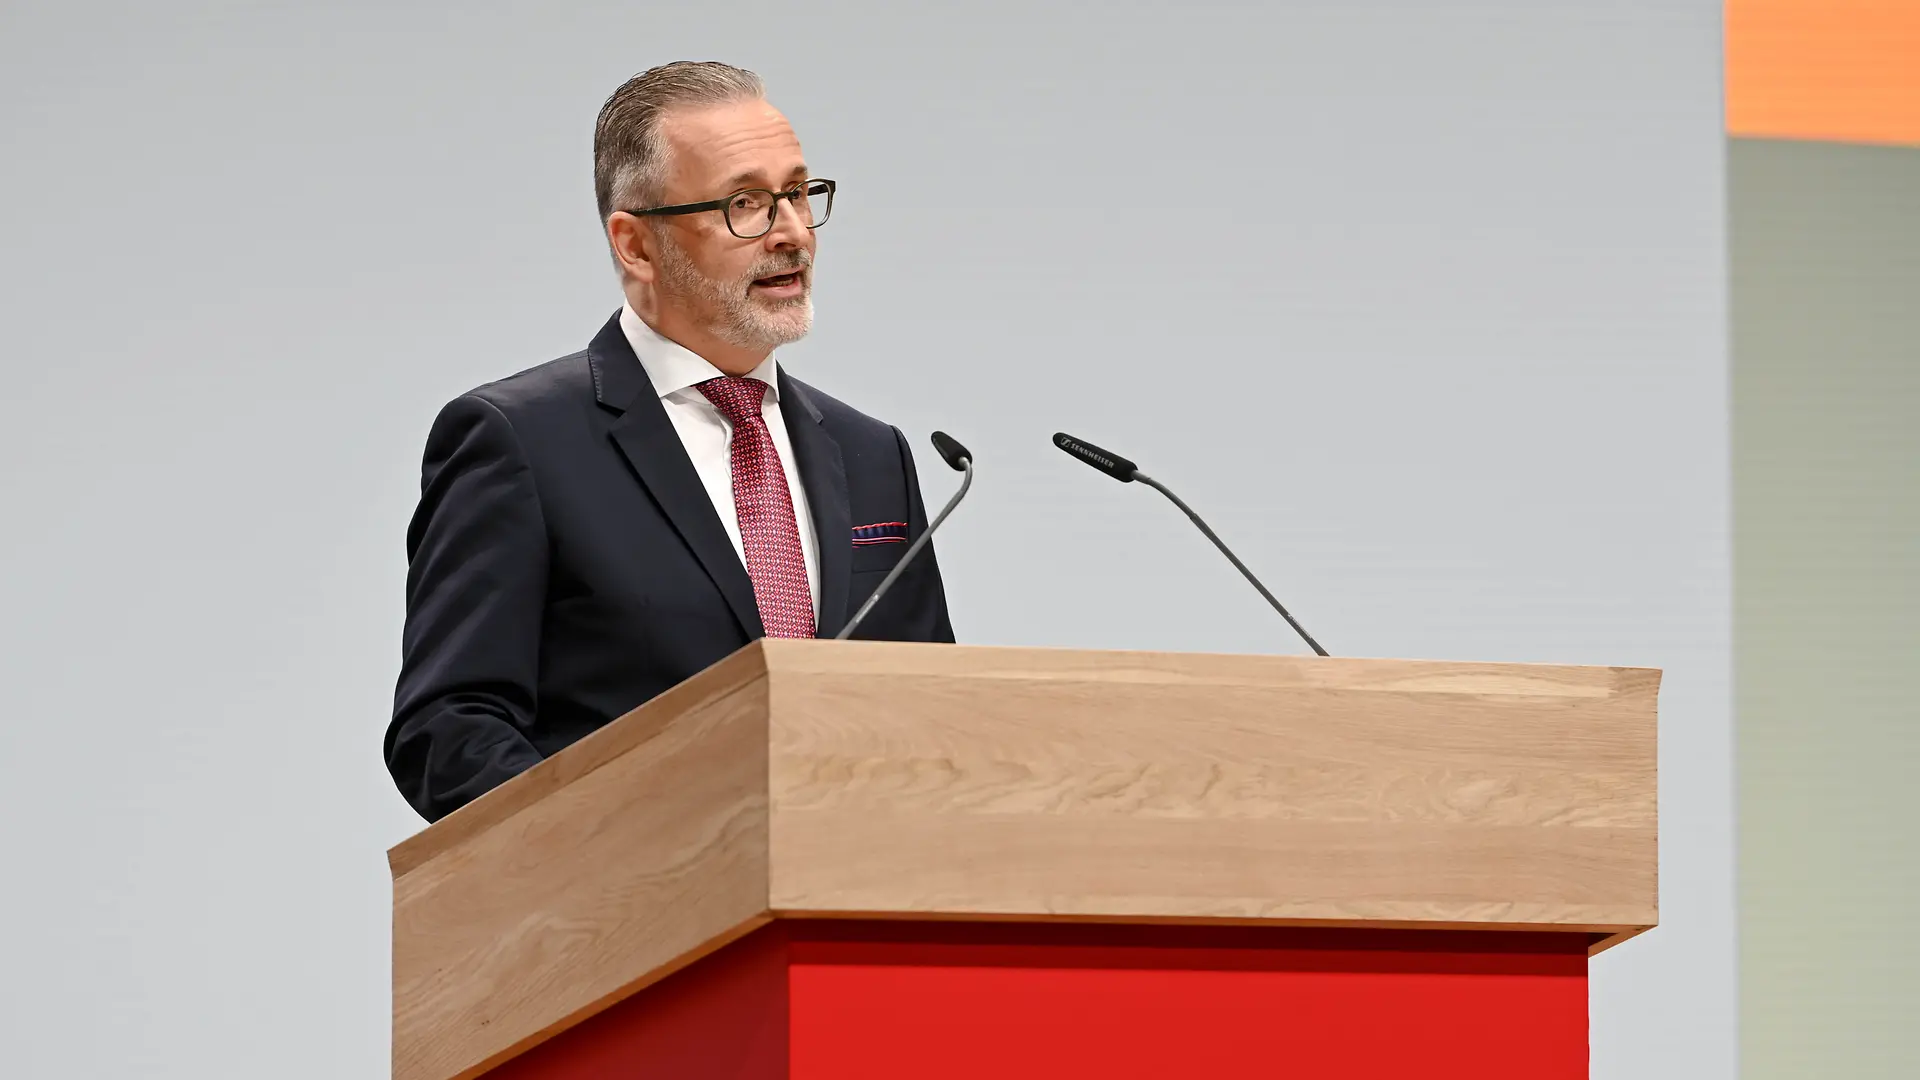 
Carsten Knobel, Vorsitzender des Vorstands von Henkel